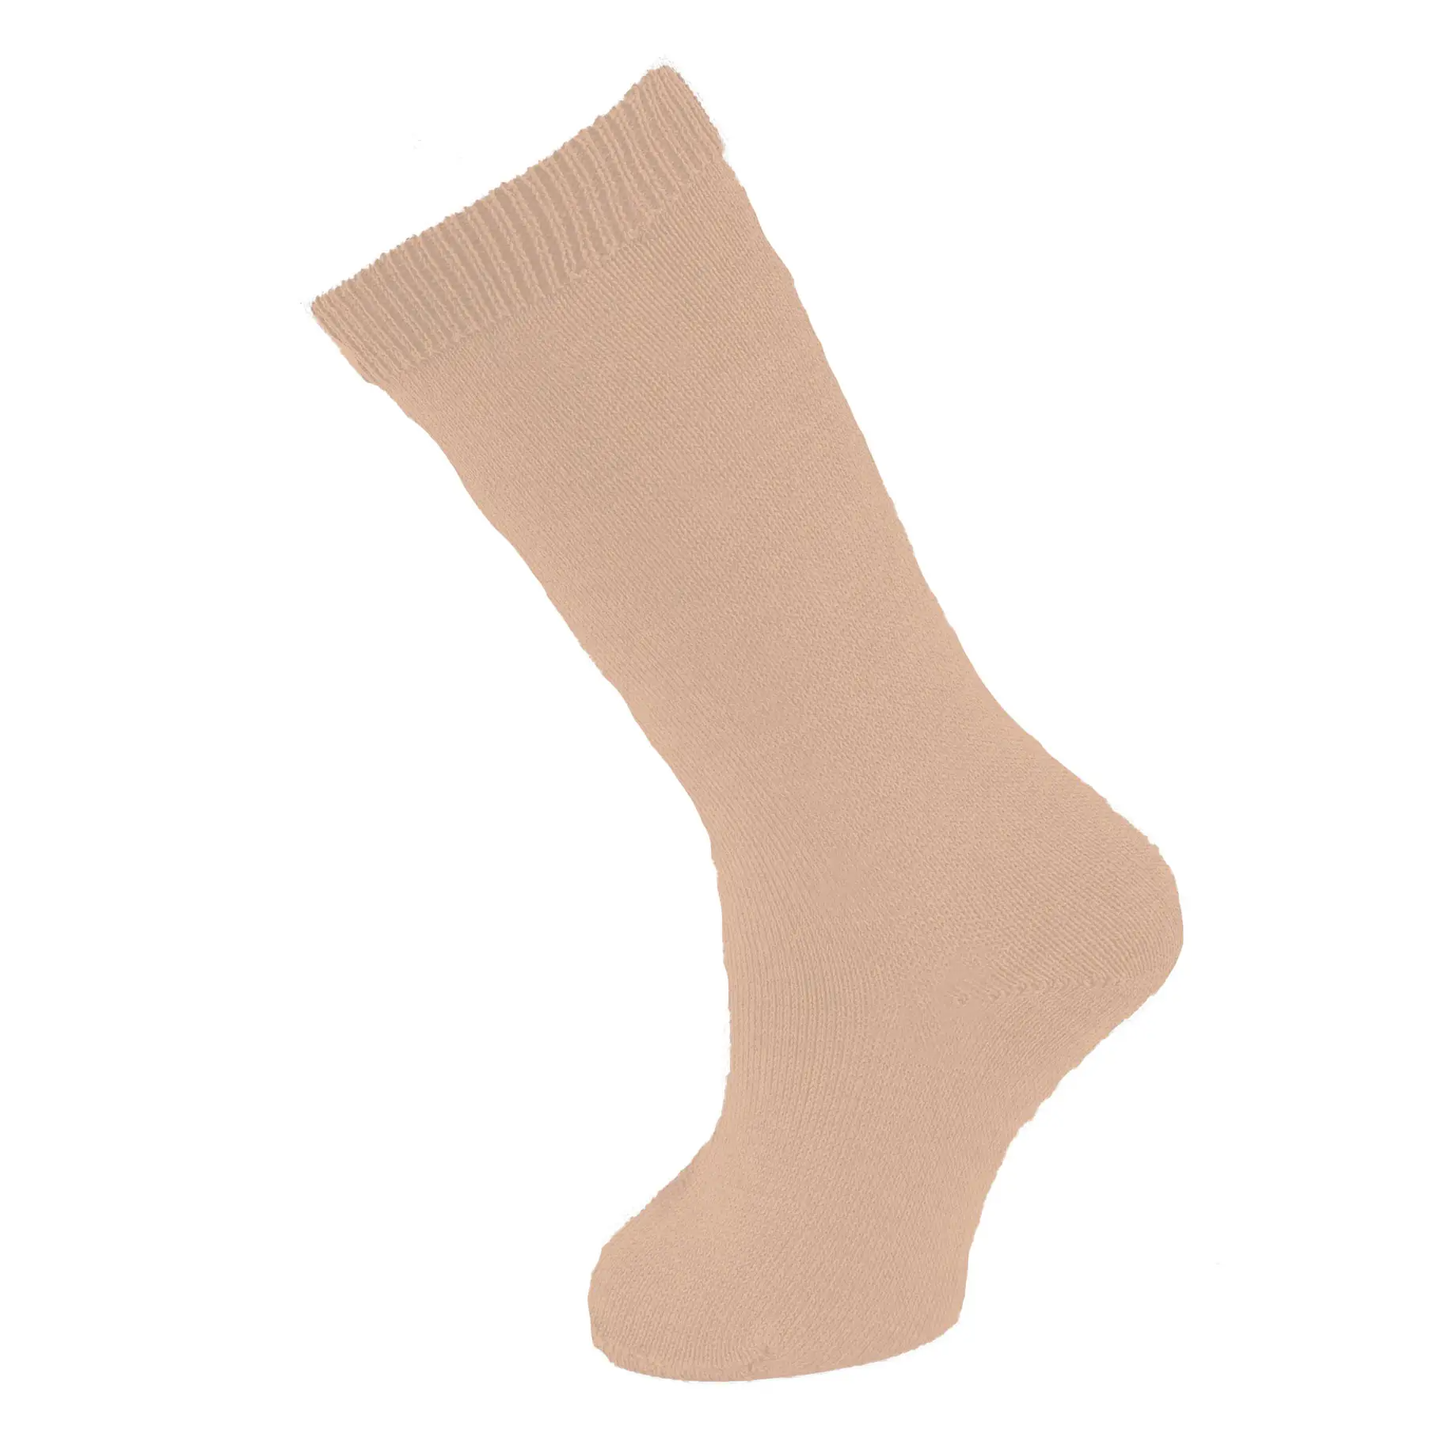 Carlomagno - Basics Knee High Socks Khaki